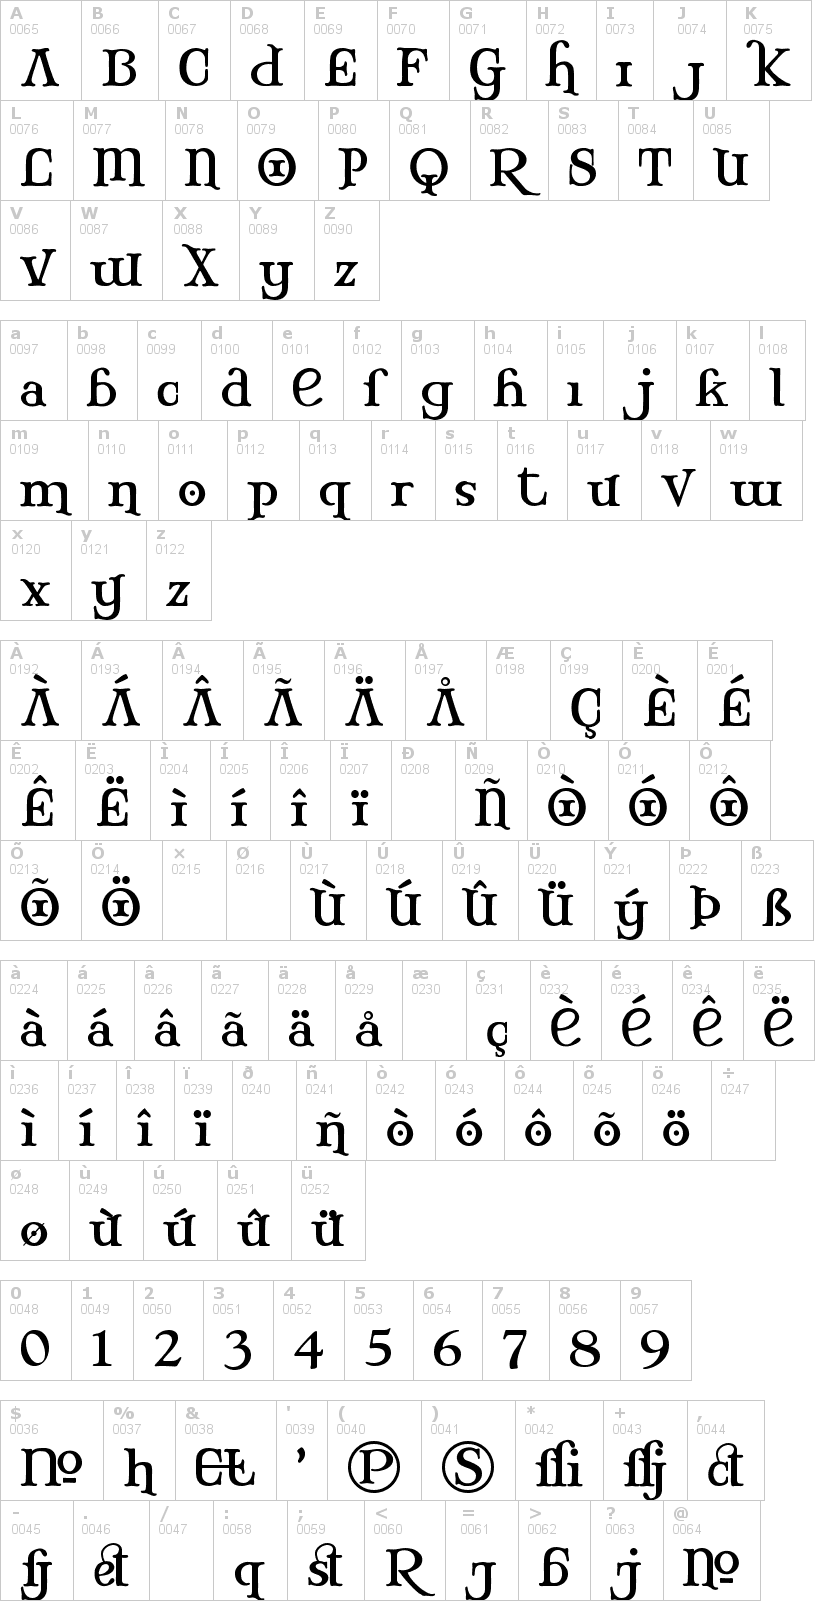 Lettere dell'alfabeto del font mary-jane con le quali è possibile realizzare adesivi prespaziati